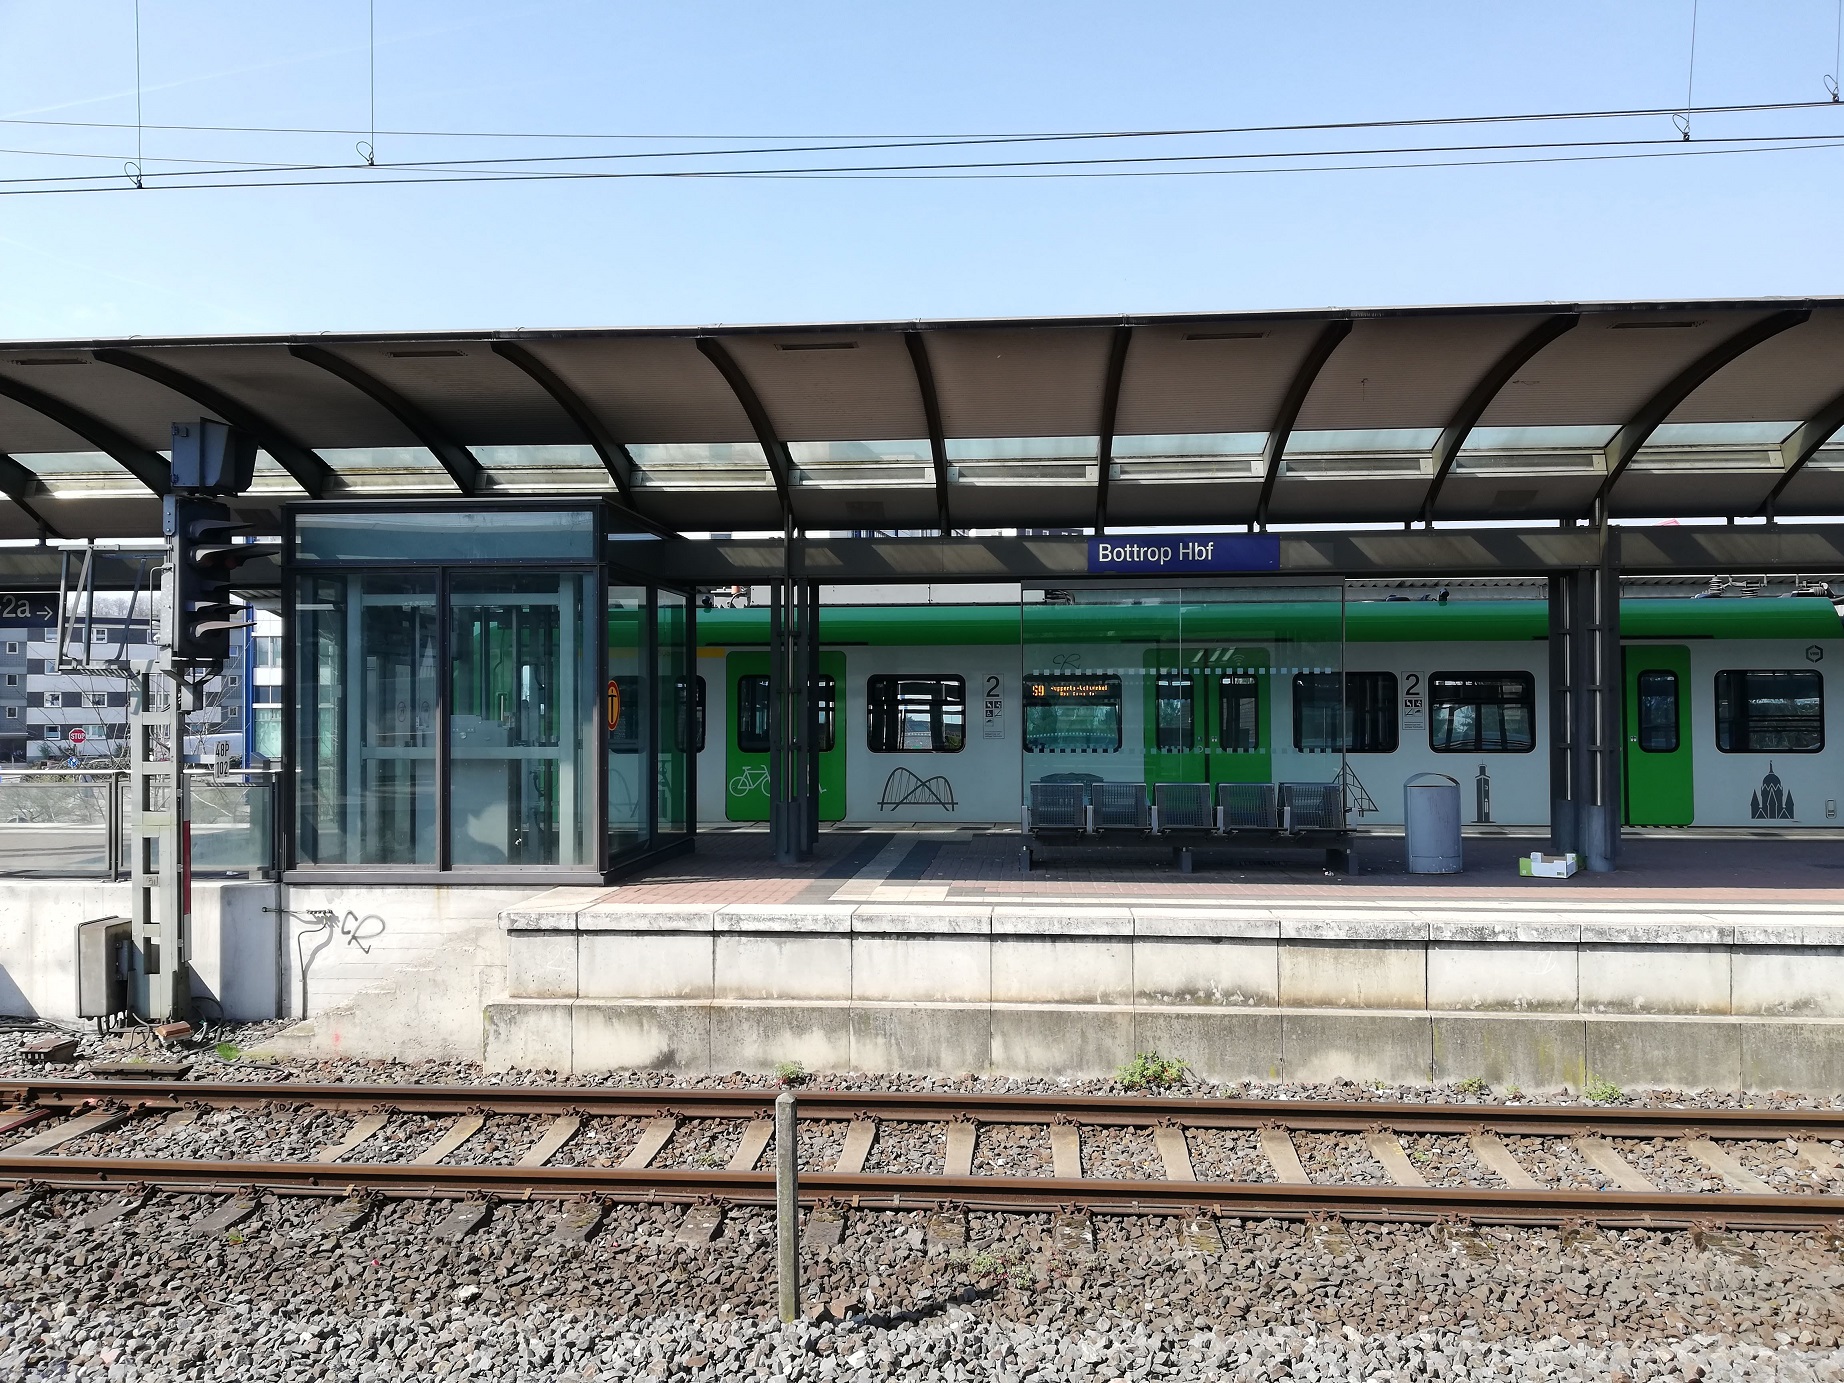 Bahnstreiks in Deutschland: Reiseverkehr weitgehend lahmgelegt, DB-Fahrer im Ausstand bis Freitag